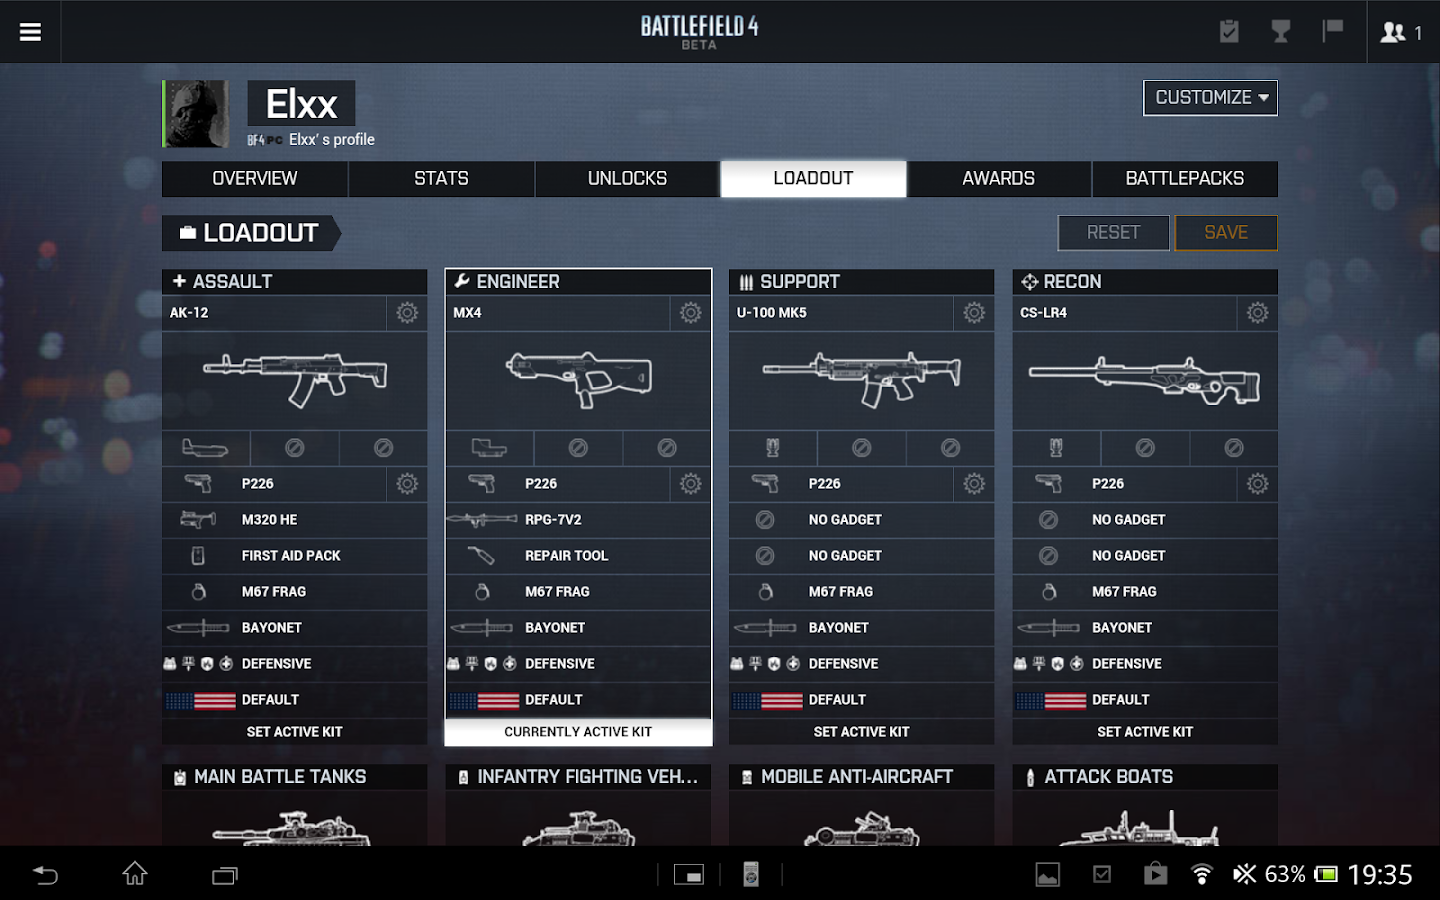    Battlelog- screenshot  